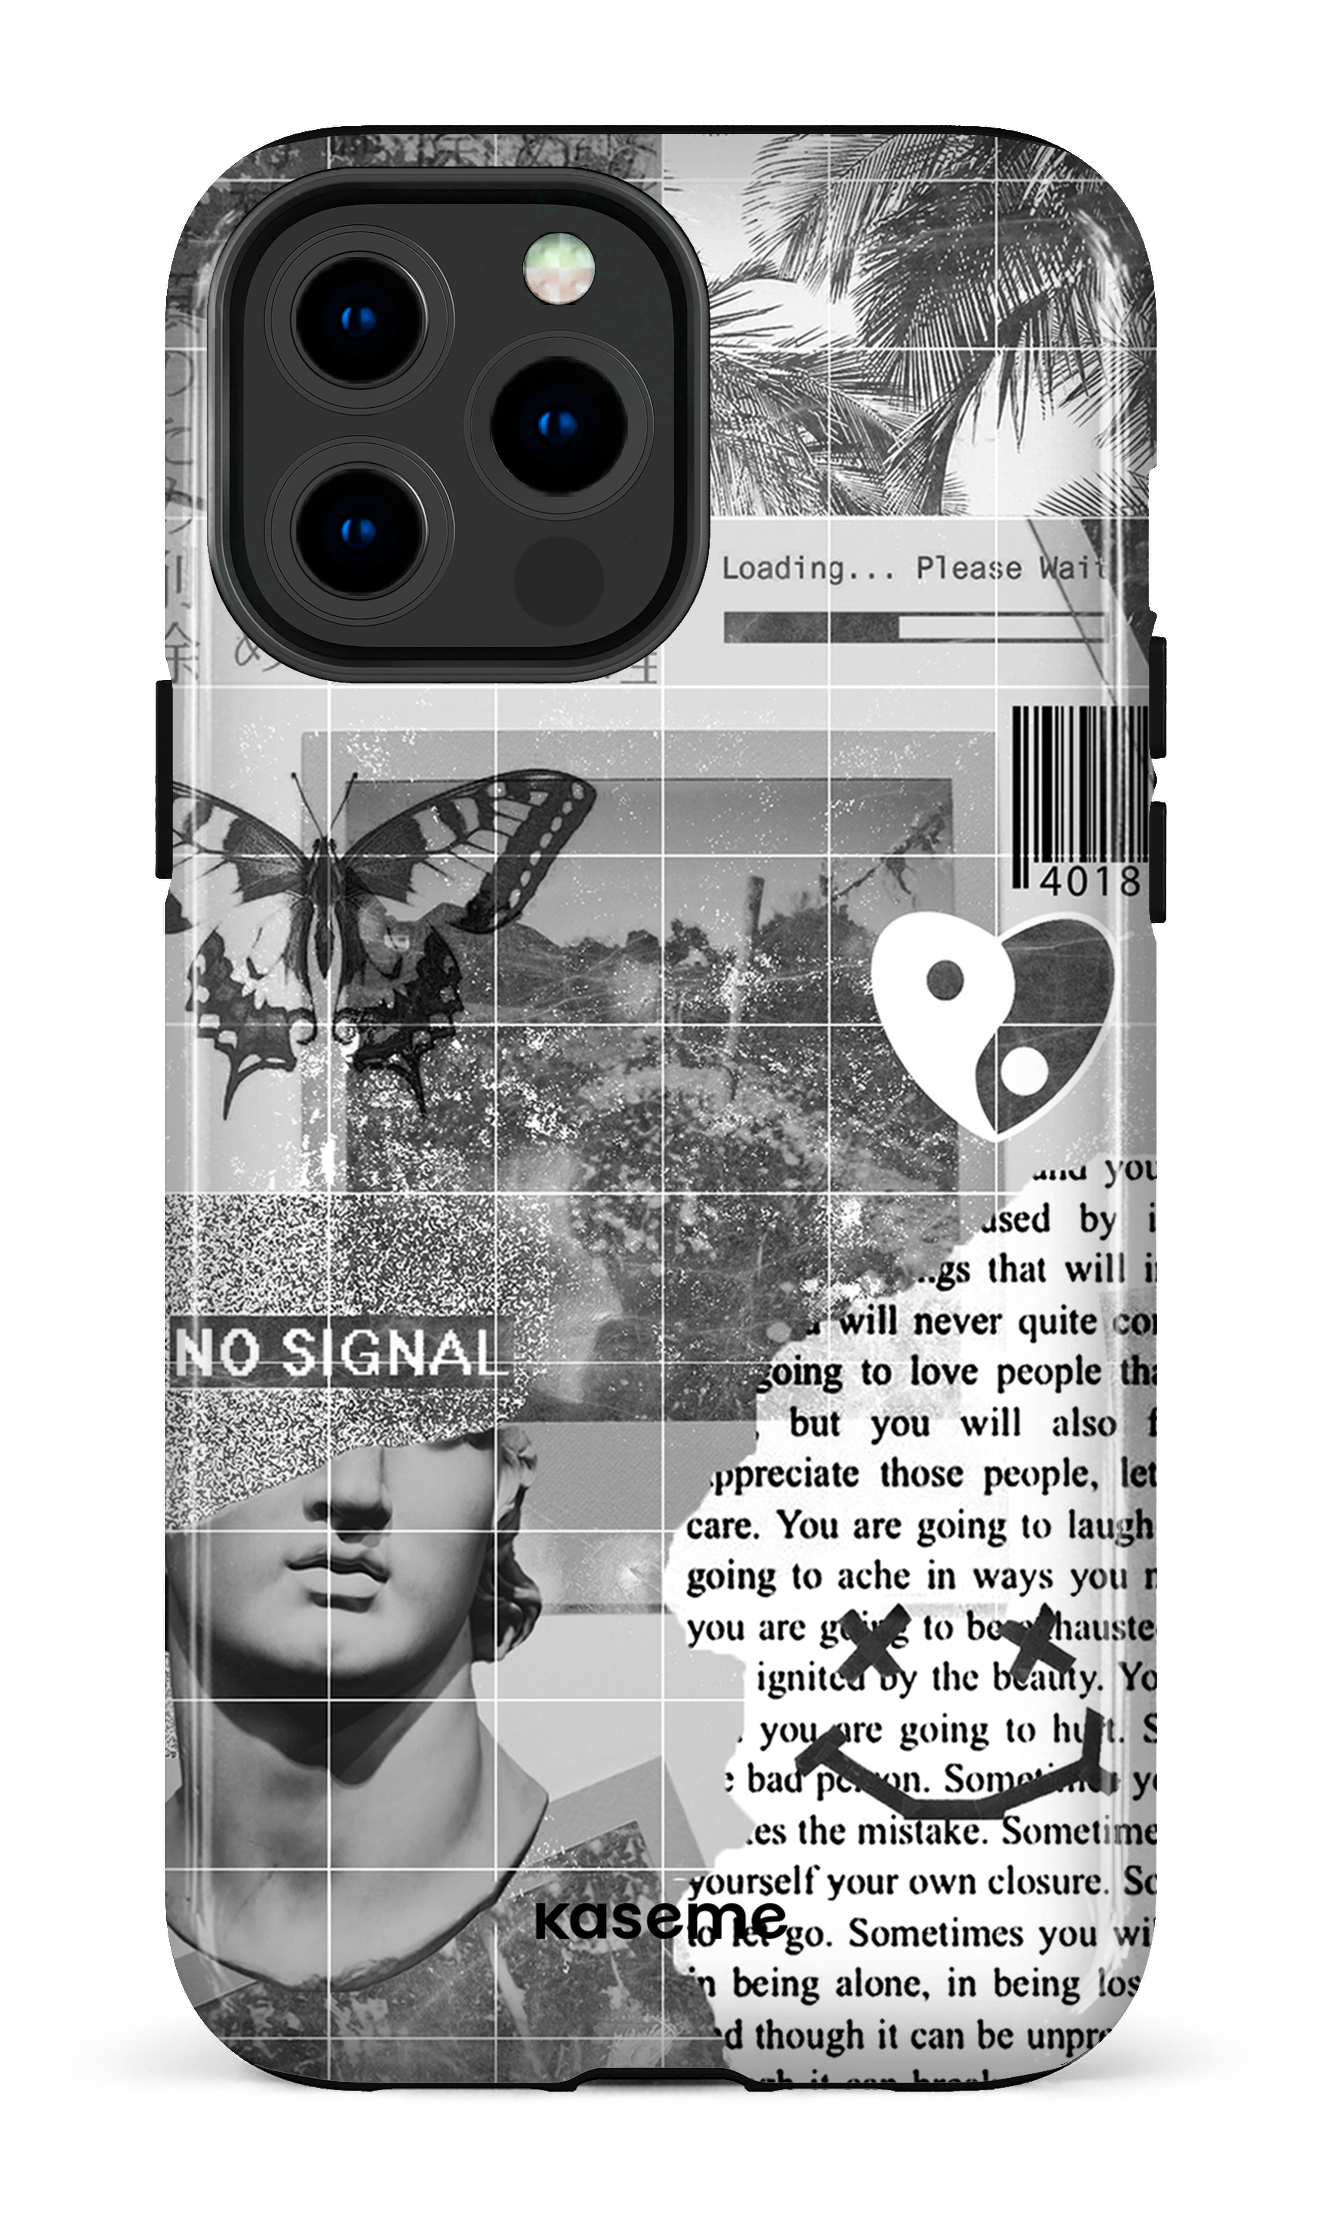 IPhone 13 Pro Max Case - Supreme